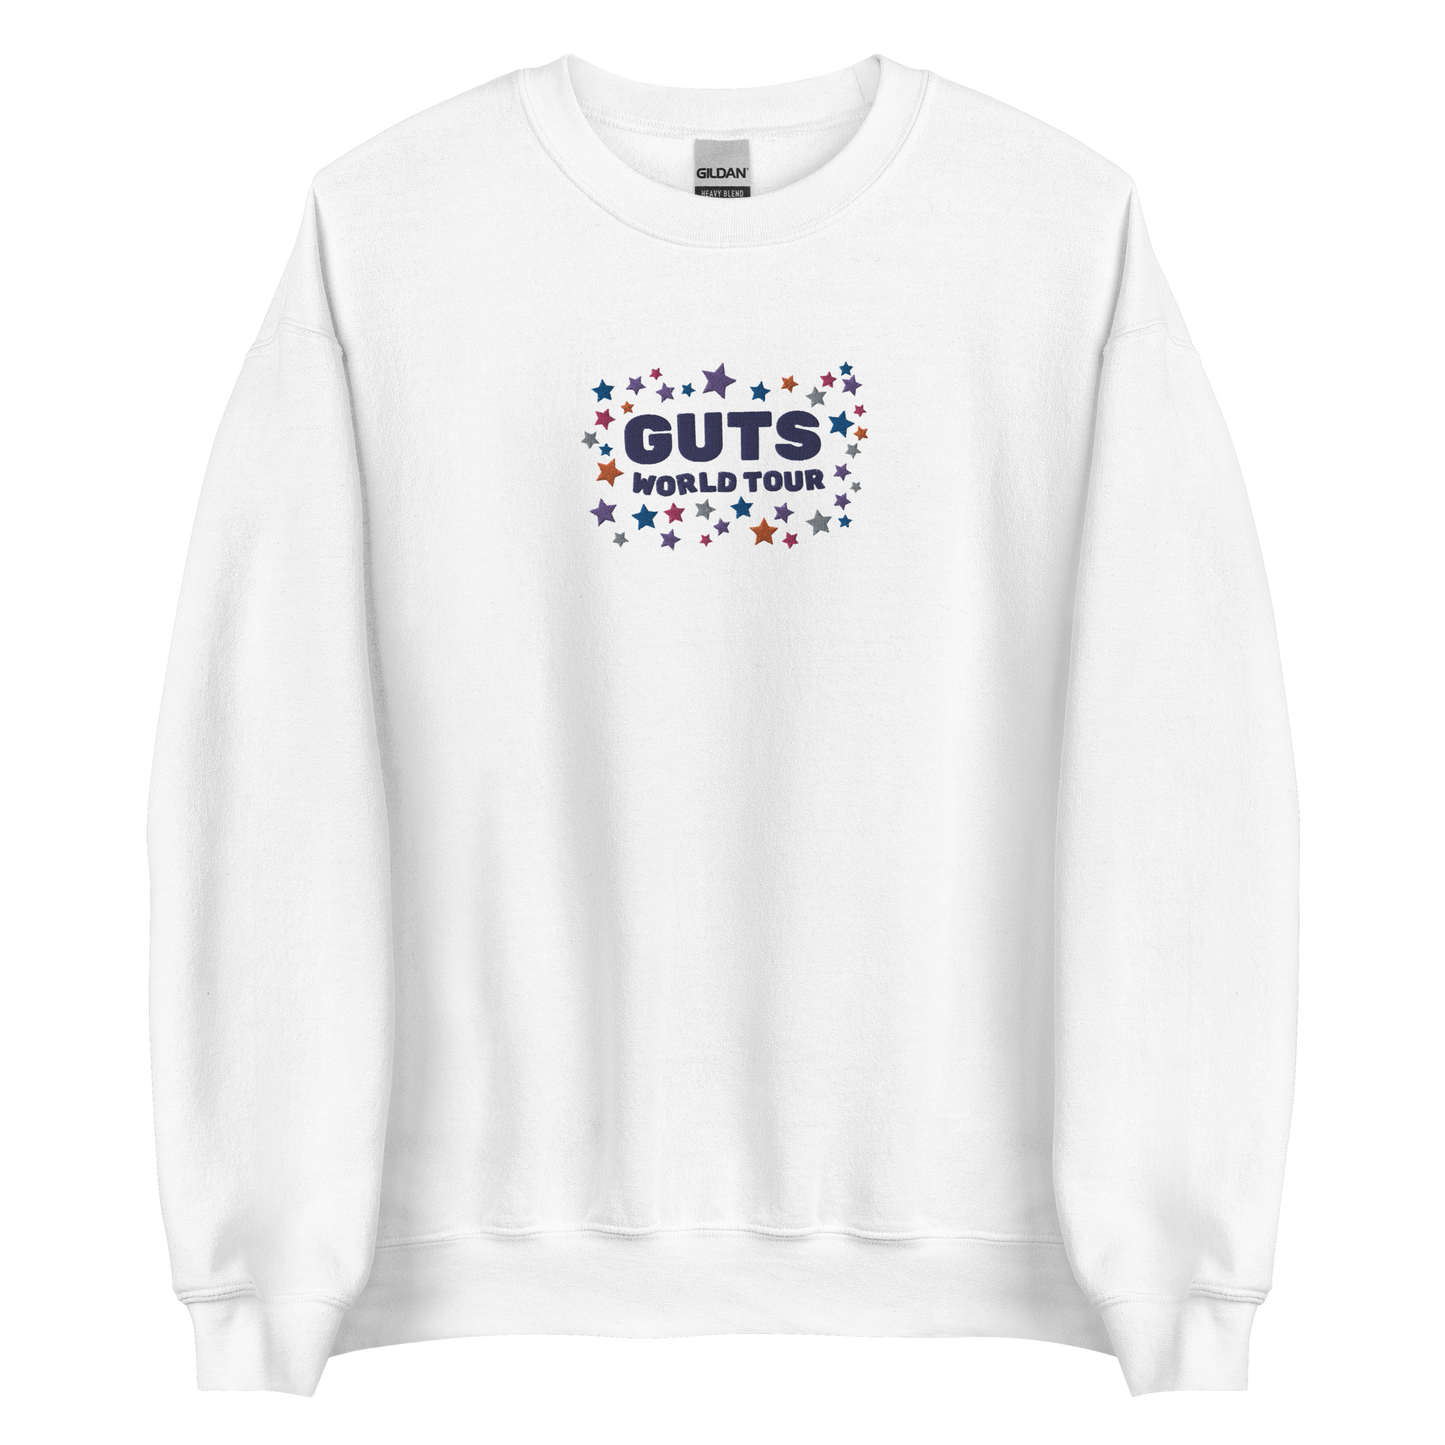 GUTS Sweatshirt